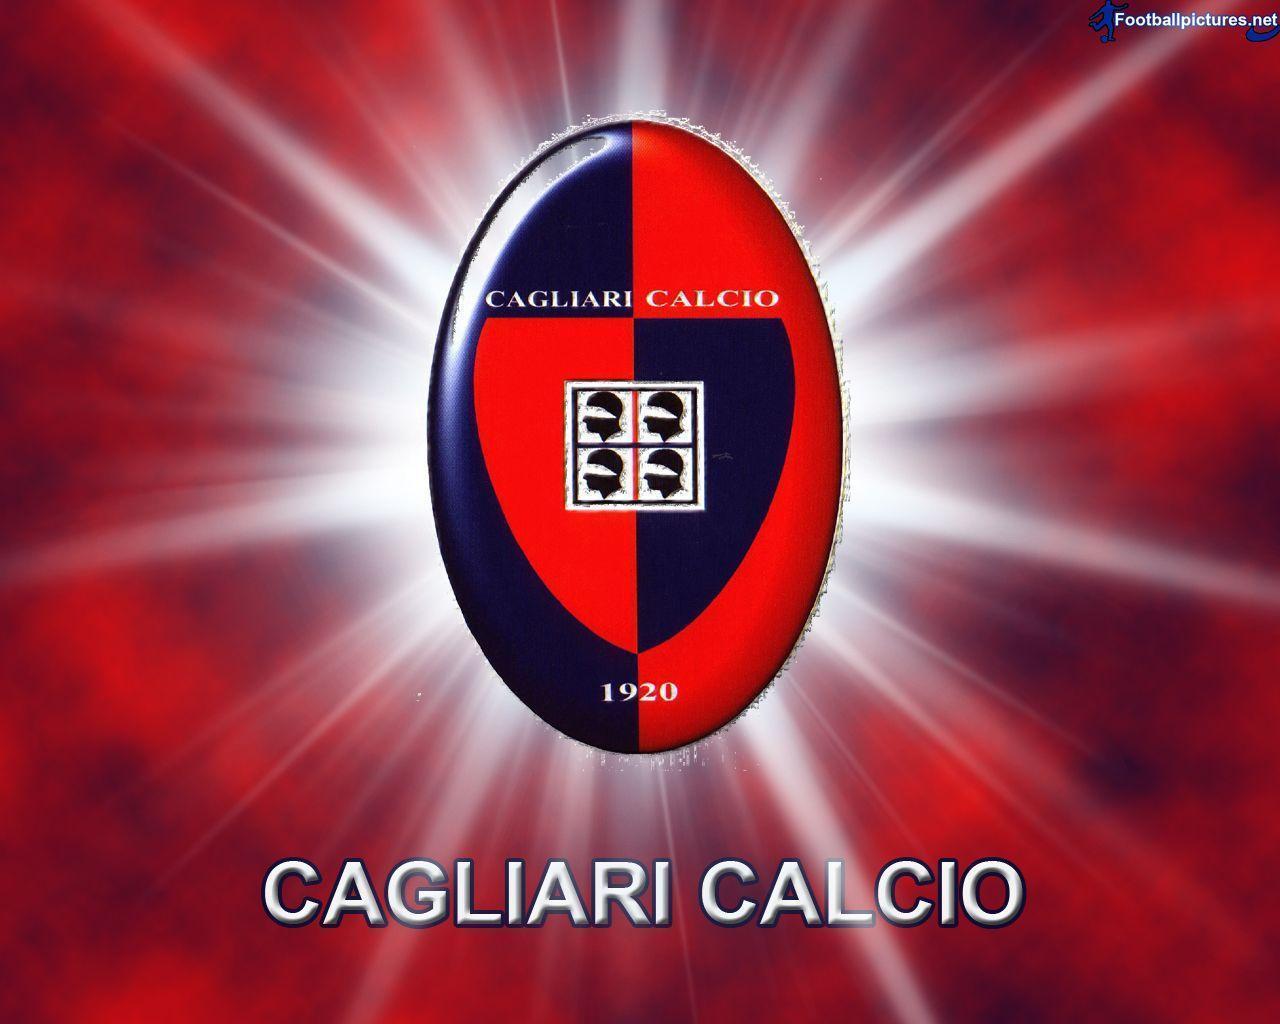 Cagliari picture, Football Wallpaper and Photo